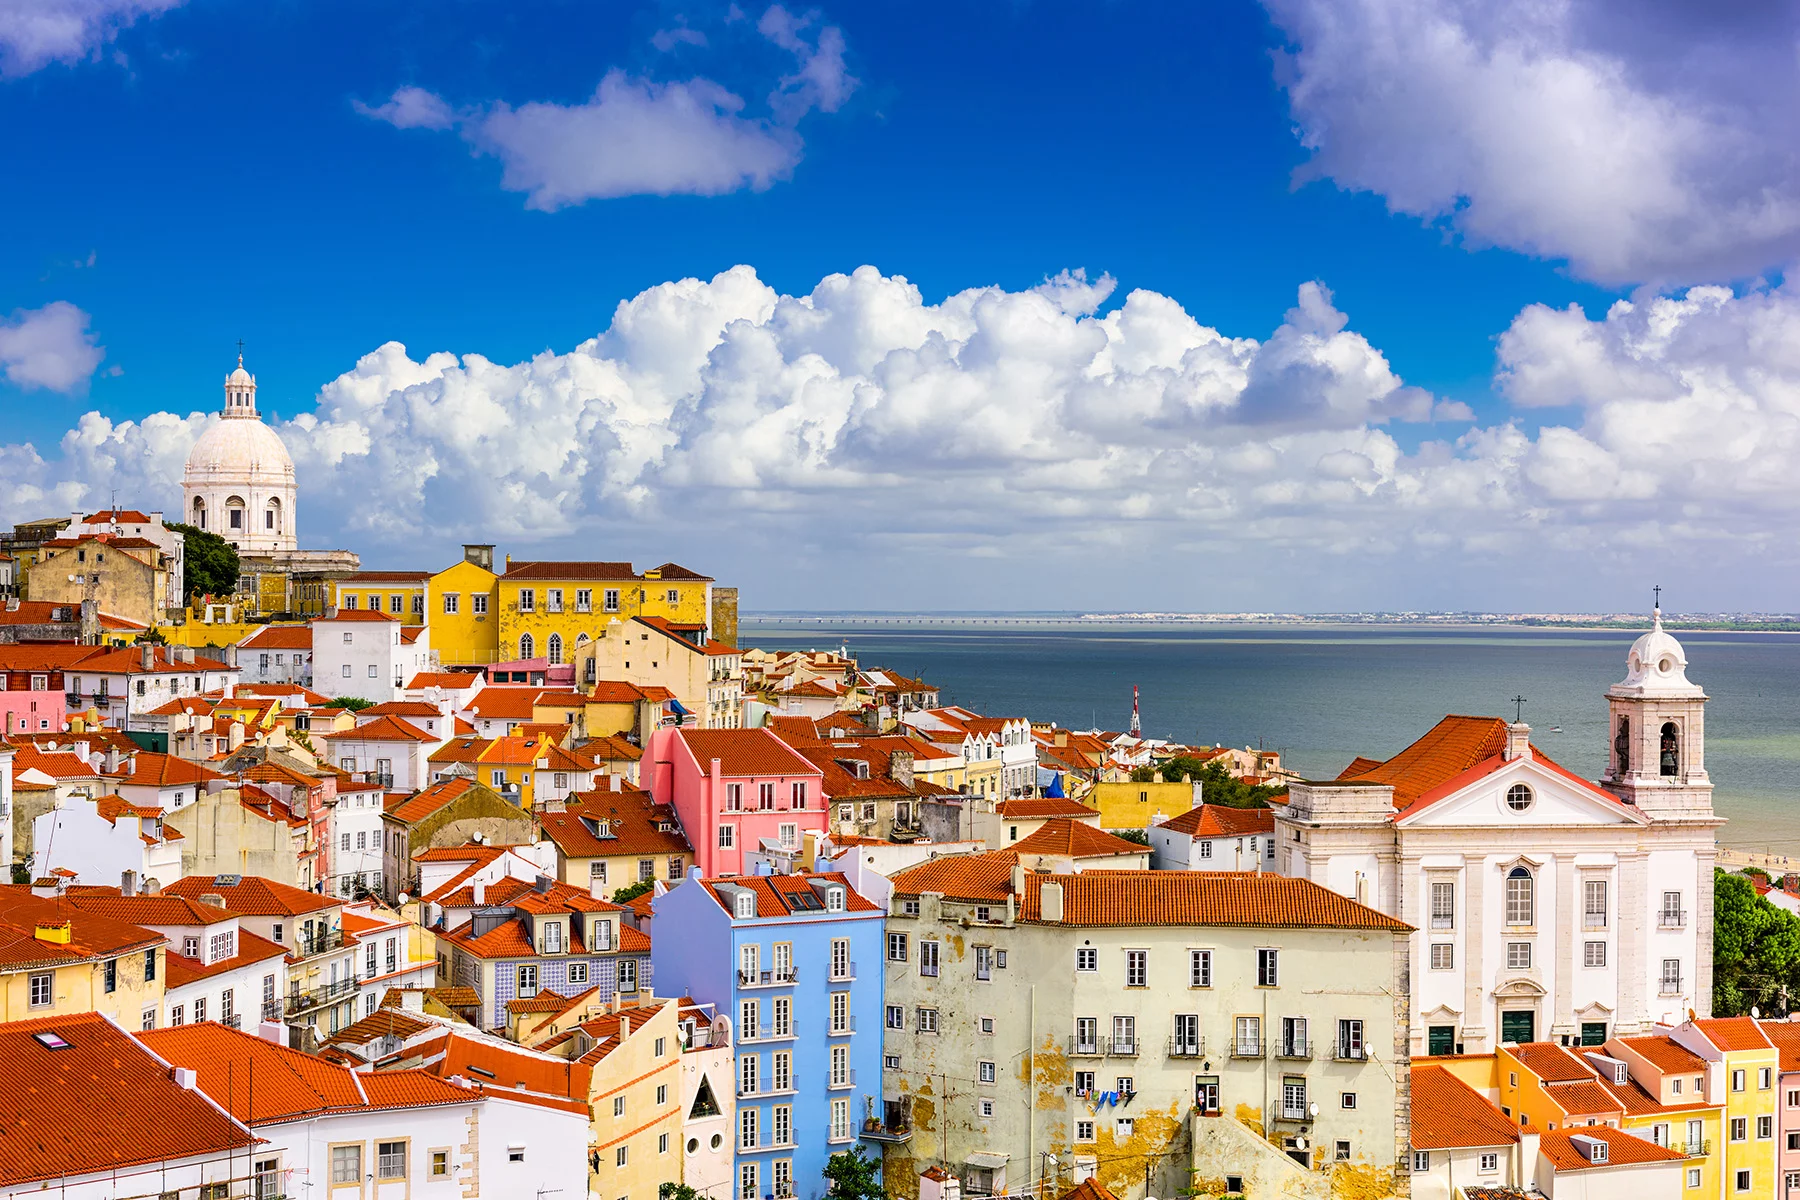 The Alfama neighborhood of Lisbon